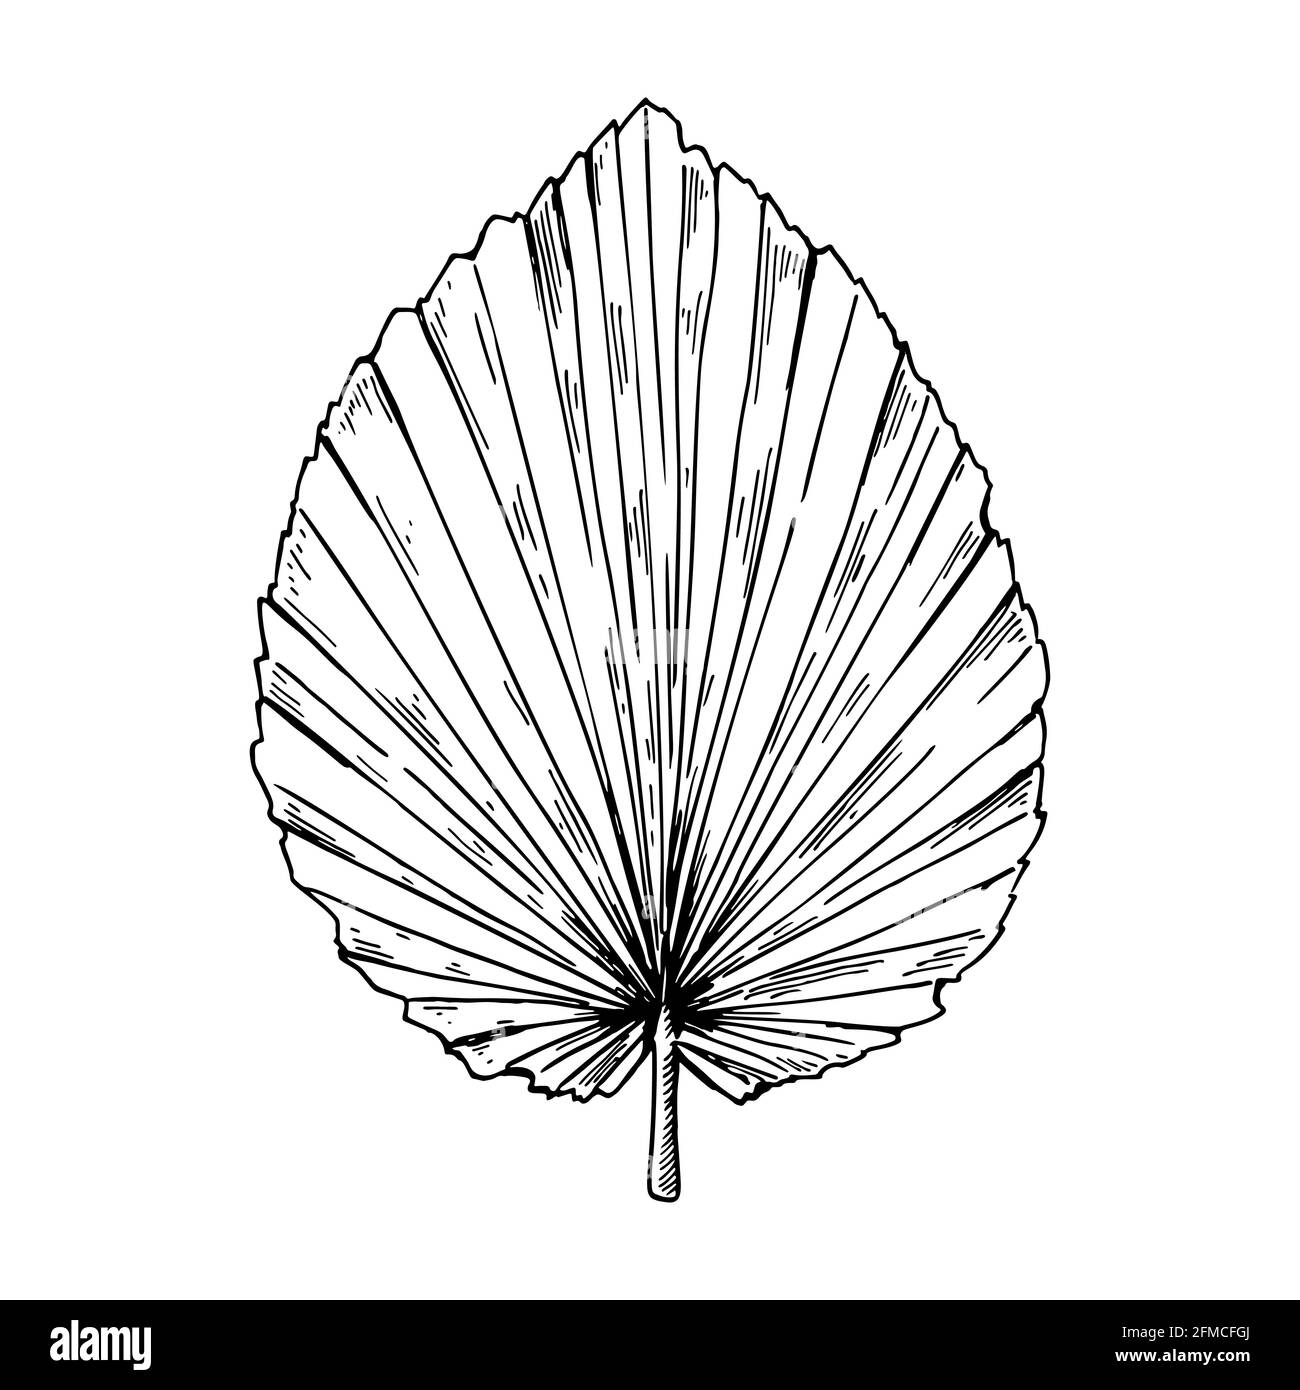 Foglia di palma secca disegnata a mano isolata su bianco. Illustrazione vettoriale nello stile di schizzo. Illustrazione Vettoriale